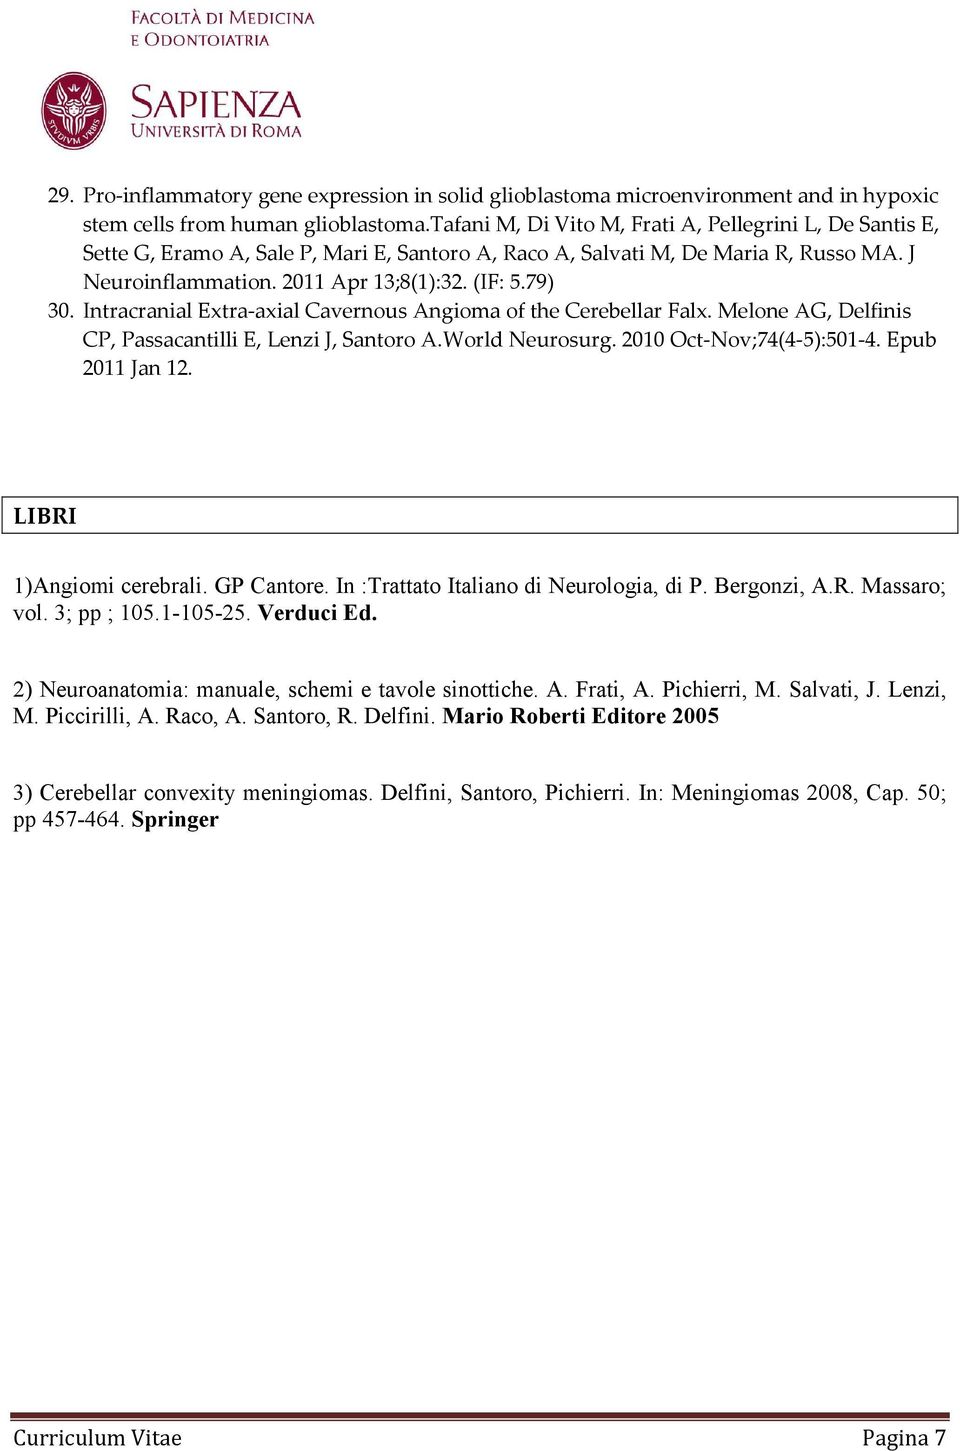 Intracranial Extra-axial Cavernous Angioma of the Cerebellar Falx. Melone AG, Delfinis CP, Passacantilli E, Lenzi J, Santoro A.World Neurosurg. 2010 Oct-Nov;74(4-5):501-4. Epub 2011 Jan 12.